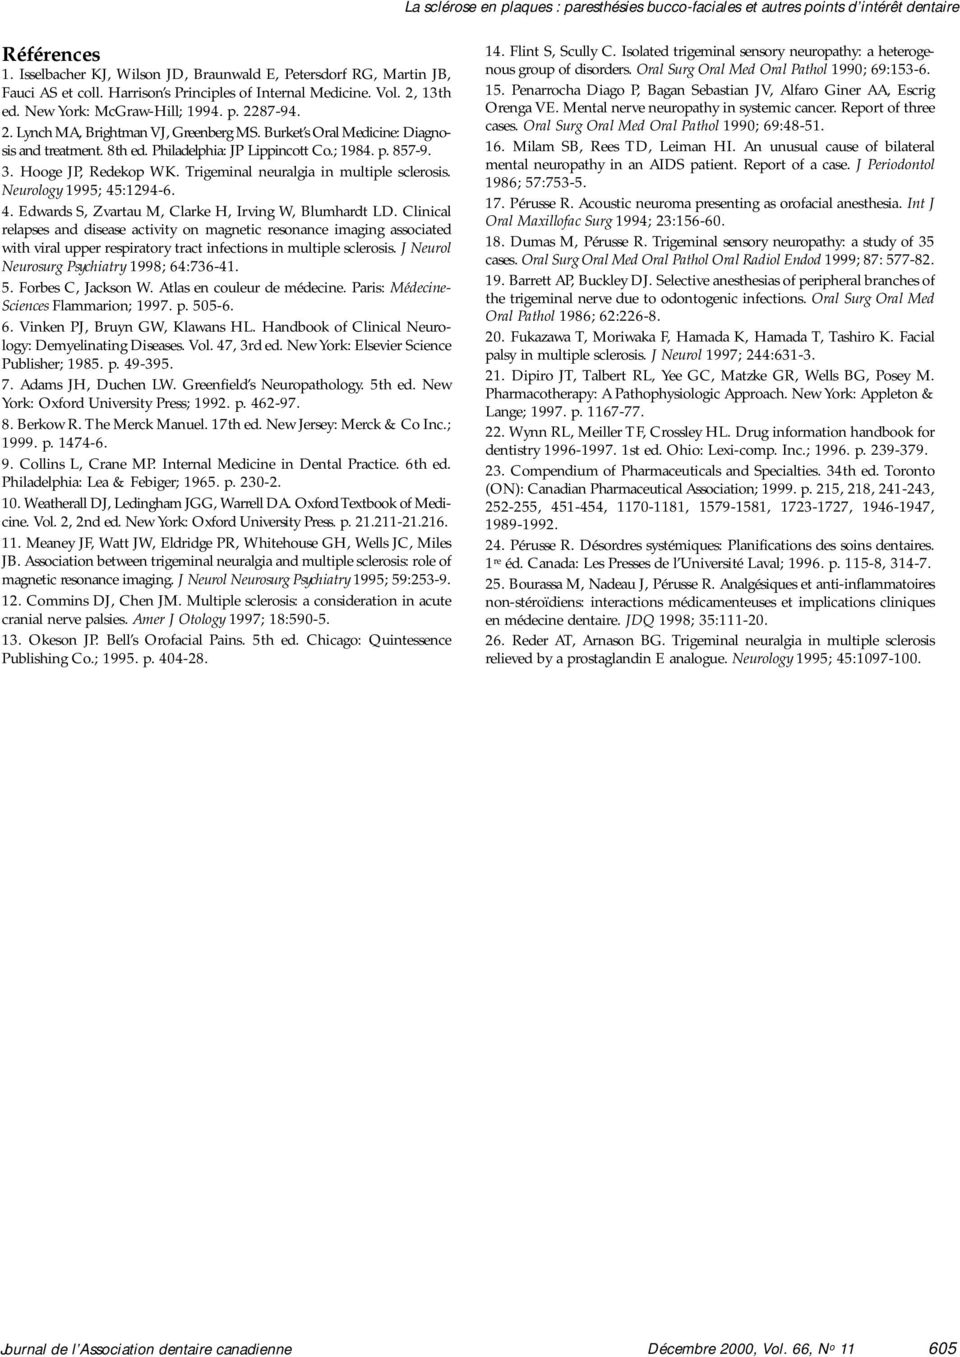 Philadelphia: JP Lippincott Co.; 1984. p. 857-9. 3. Hooge JP, Redekop WK. Trigeminal neuralgia in multiple sclerosis. Neurology 1995; 45:1294-6. 4. Edwards S, Zvartau M, Clarke H, Irving W, Blumhardt LD.